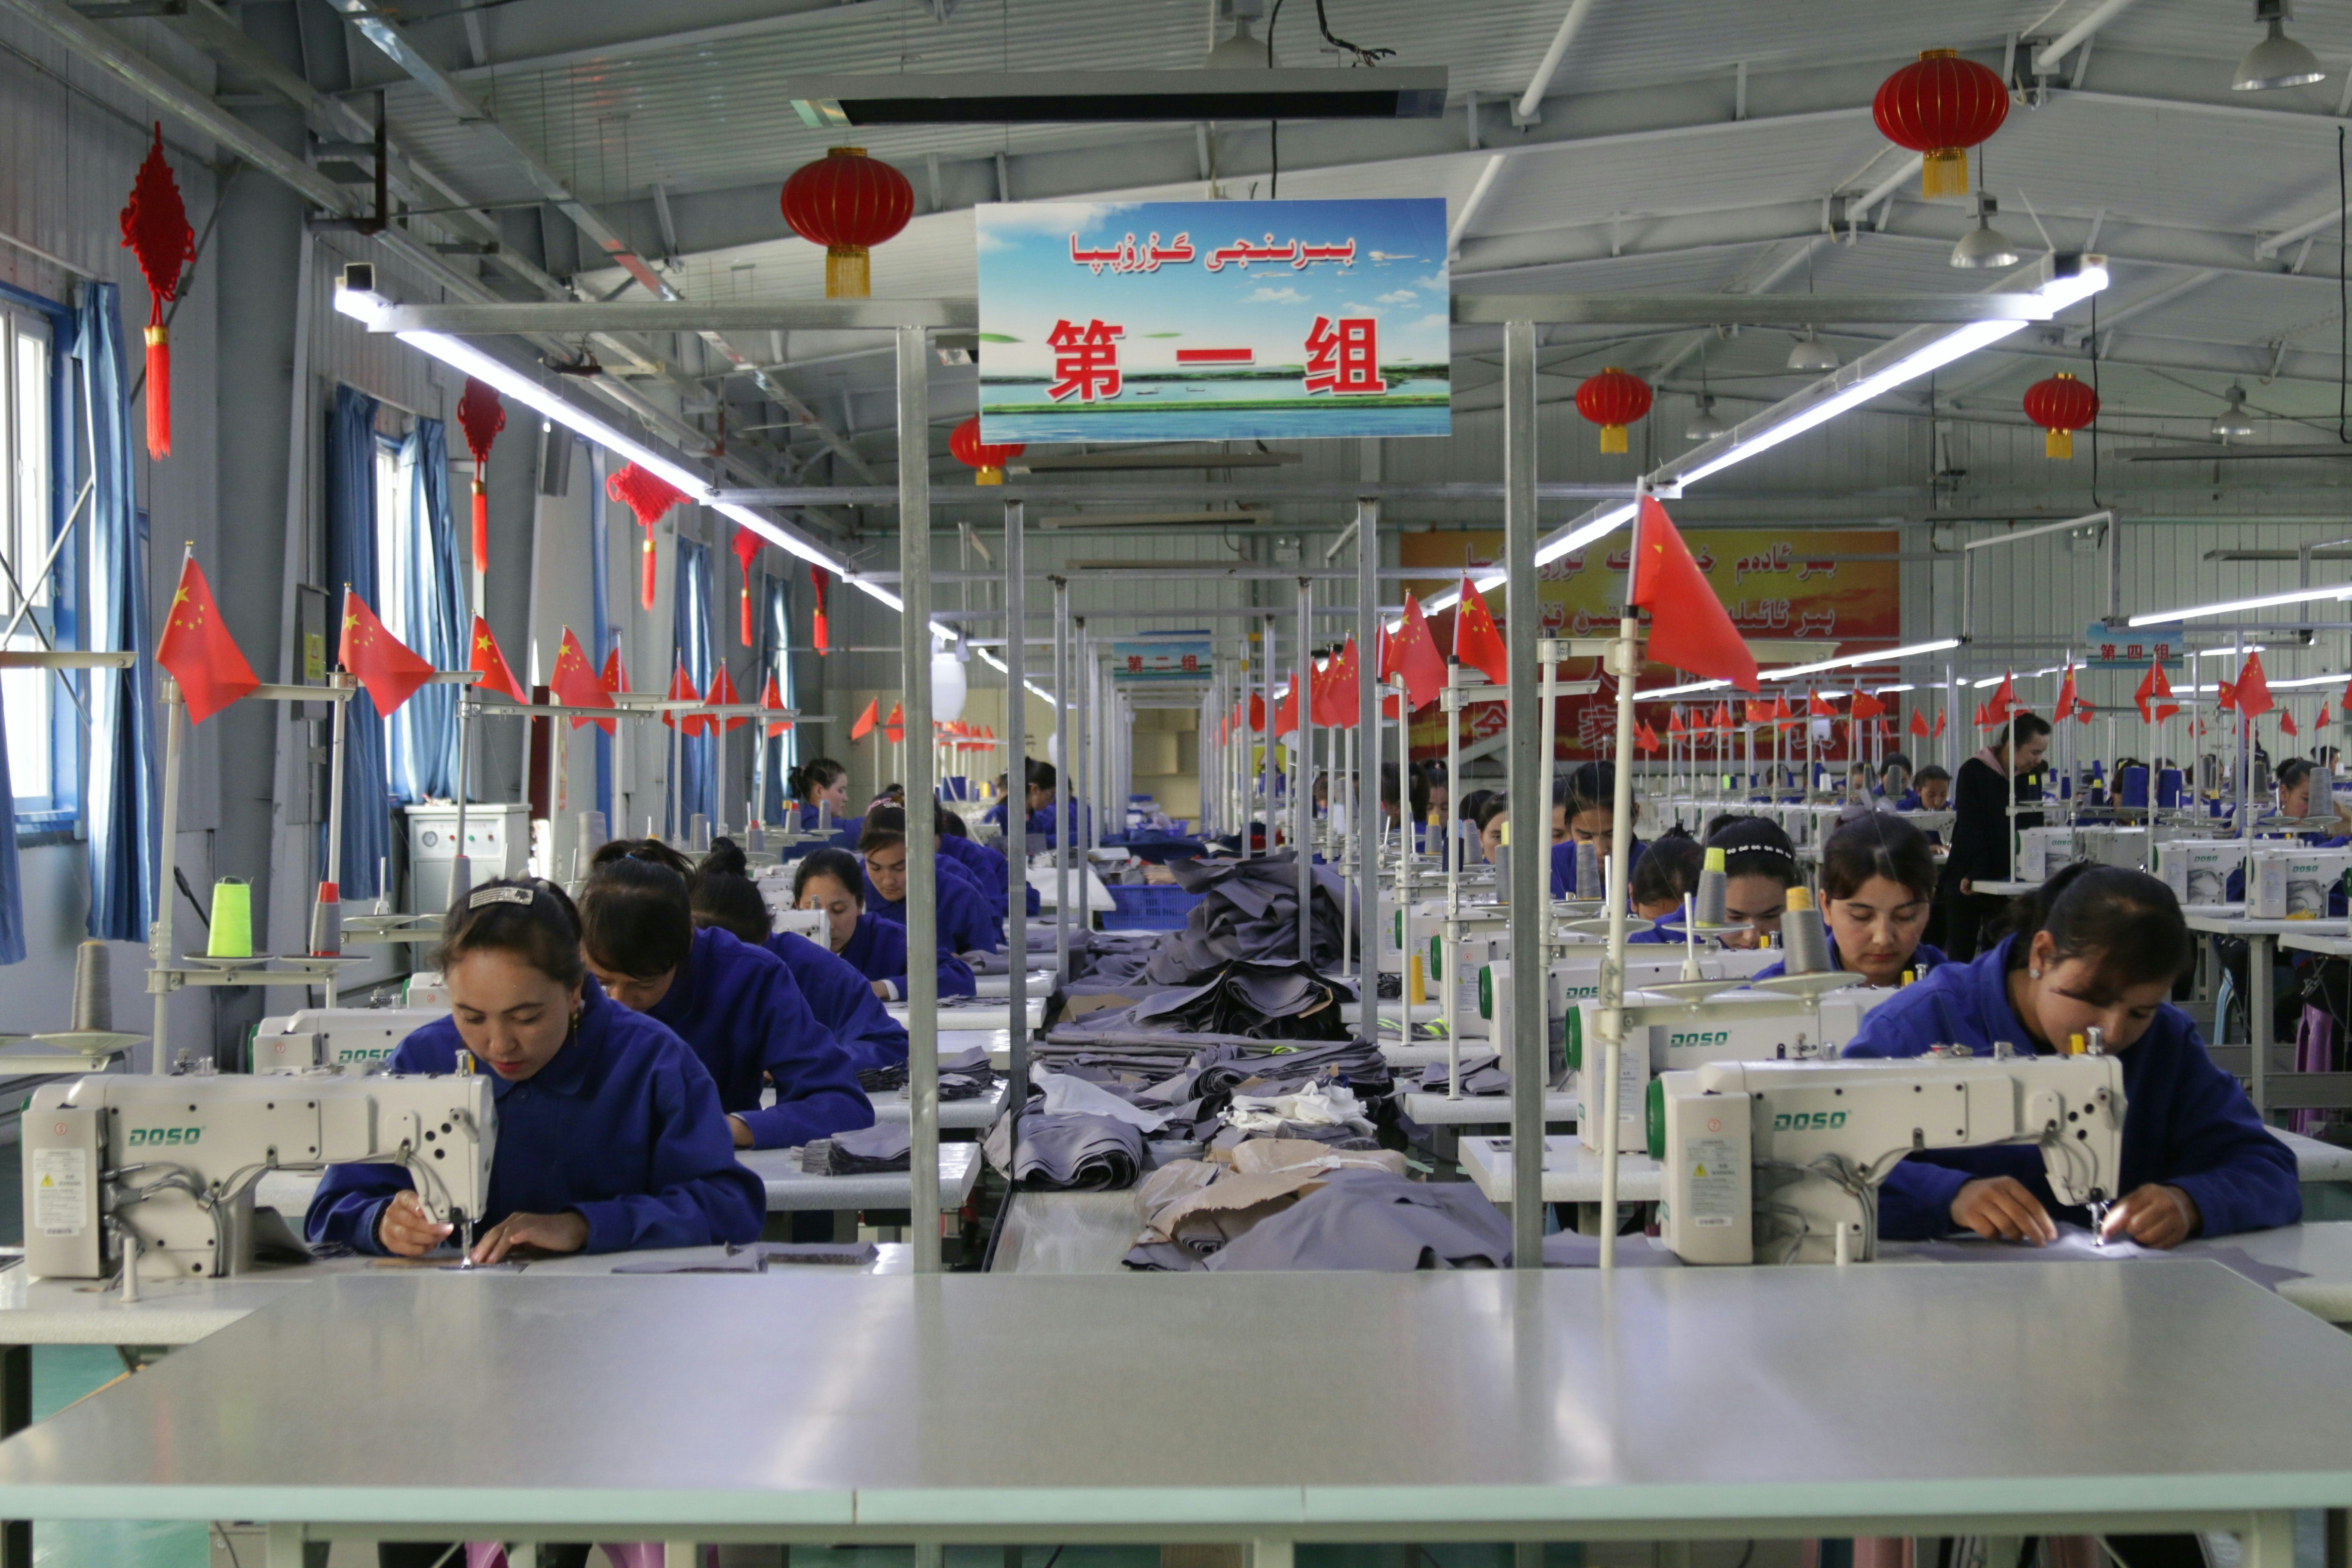 Workers in a factory in Hotan county, Xinjiang, China. Shutterstock.